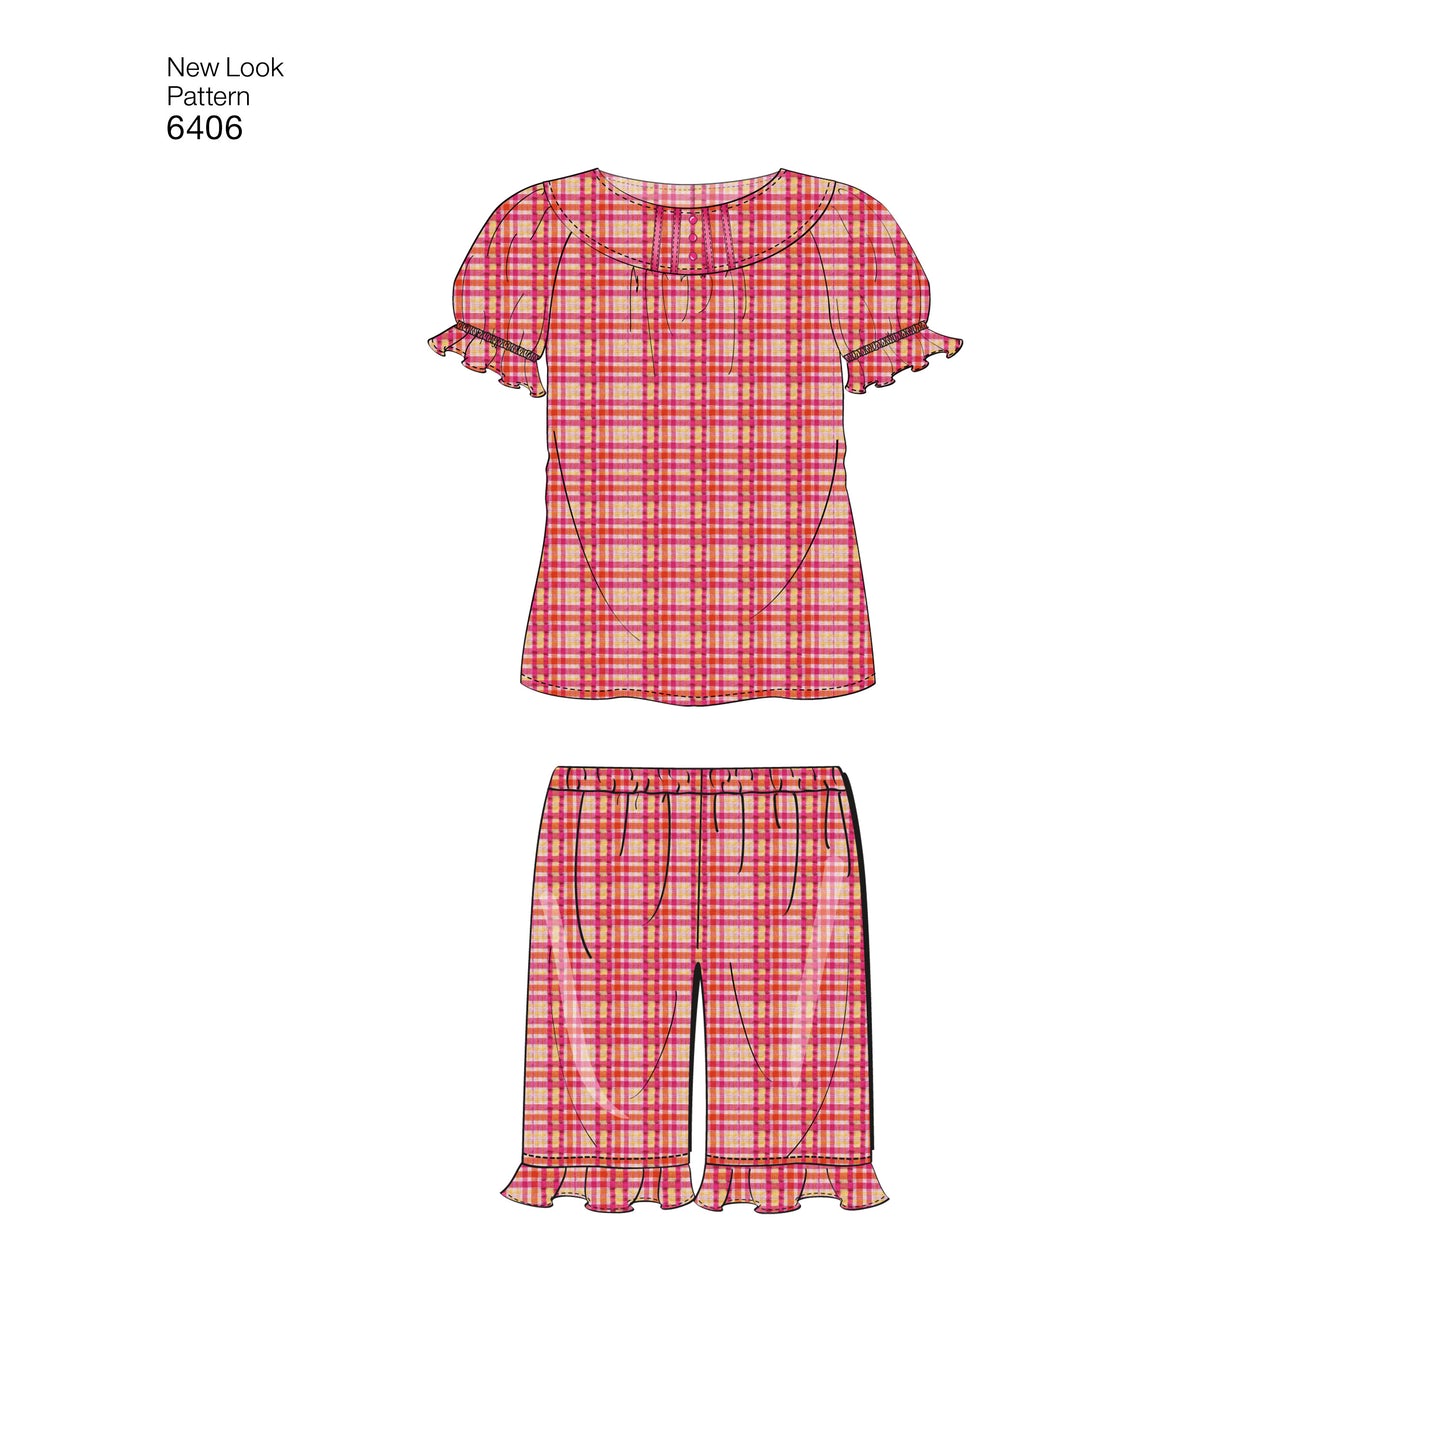 Symønster New Look 6406 - Top Bukser Shorts Pyjamas - Pige Dreng | Billede 3